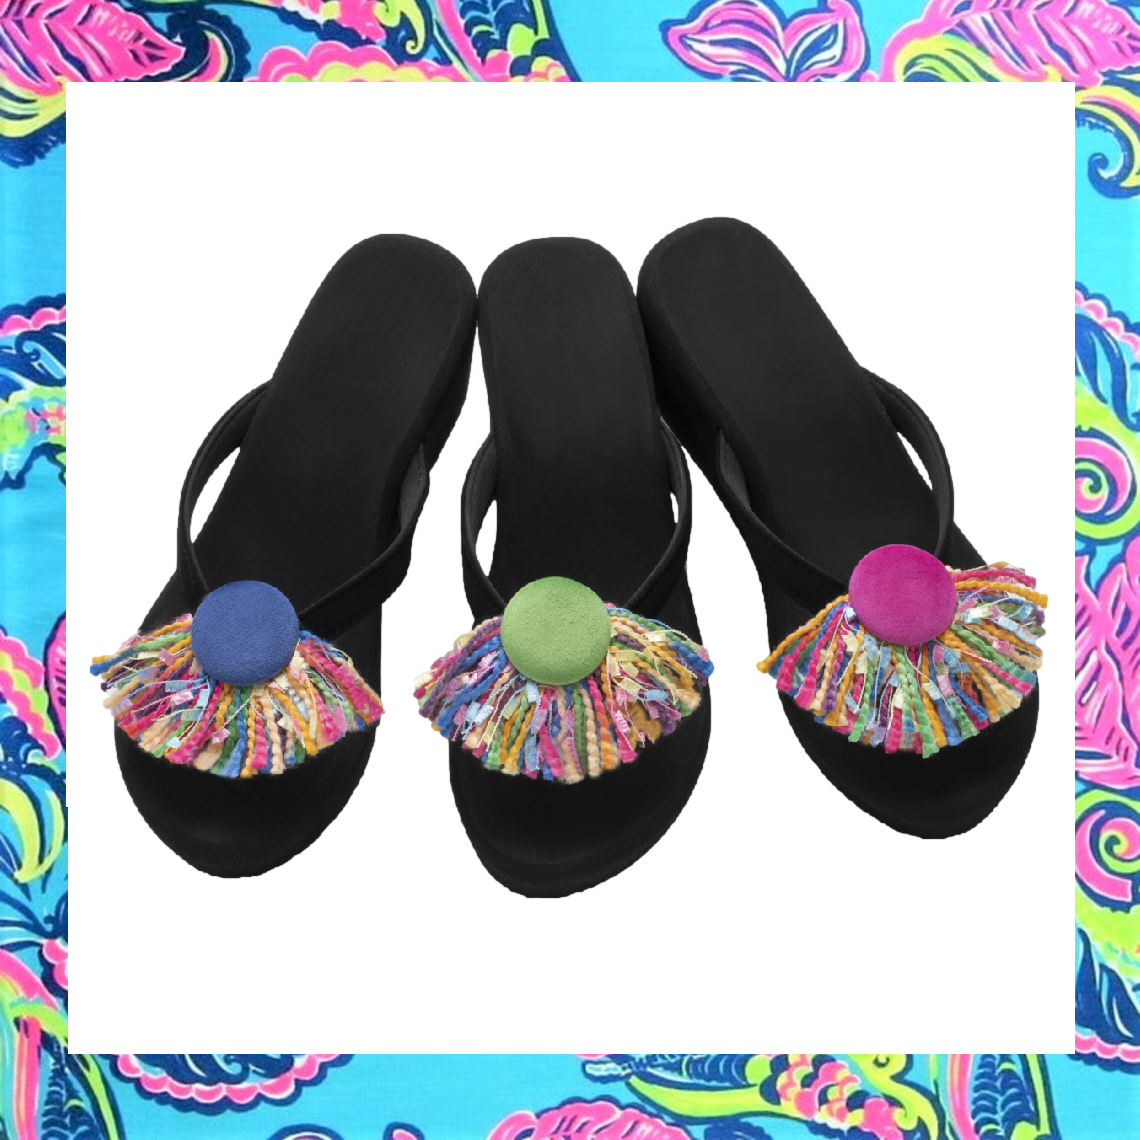 women-shoe-flip-flop-add-on-charm-pink-green-blue-